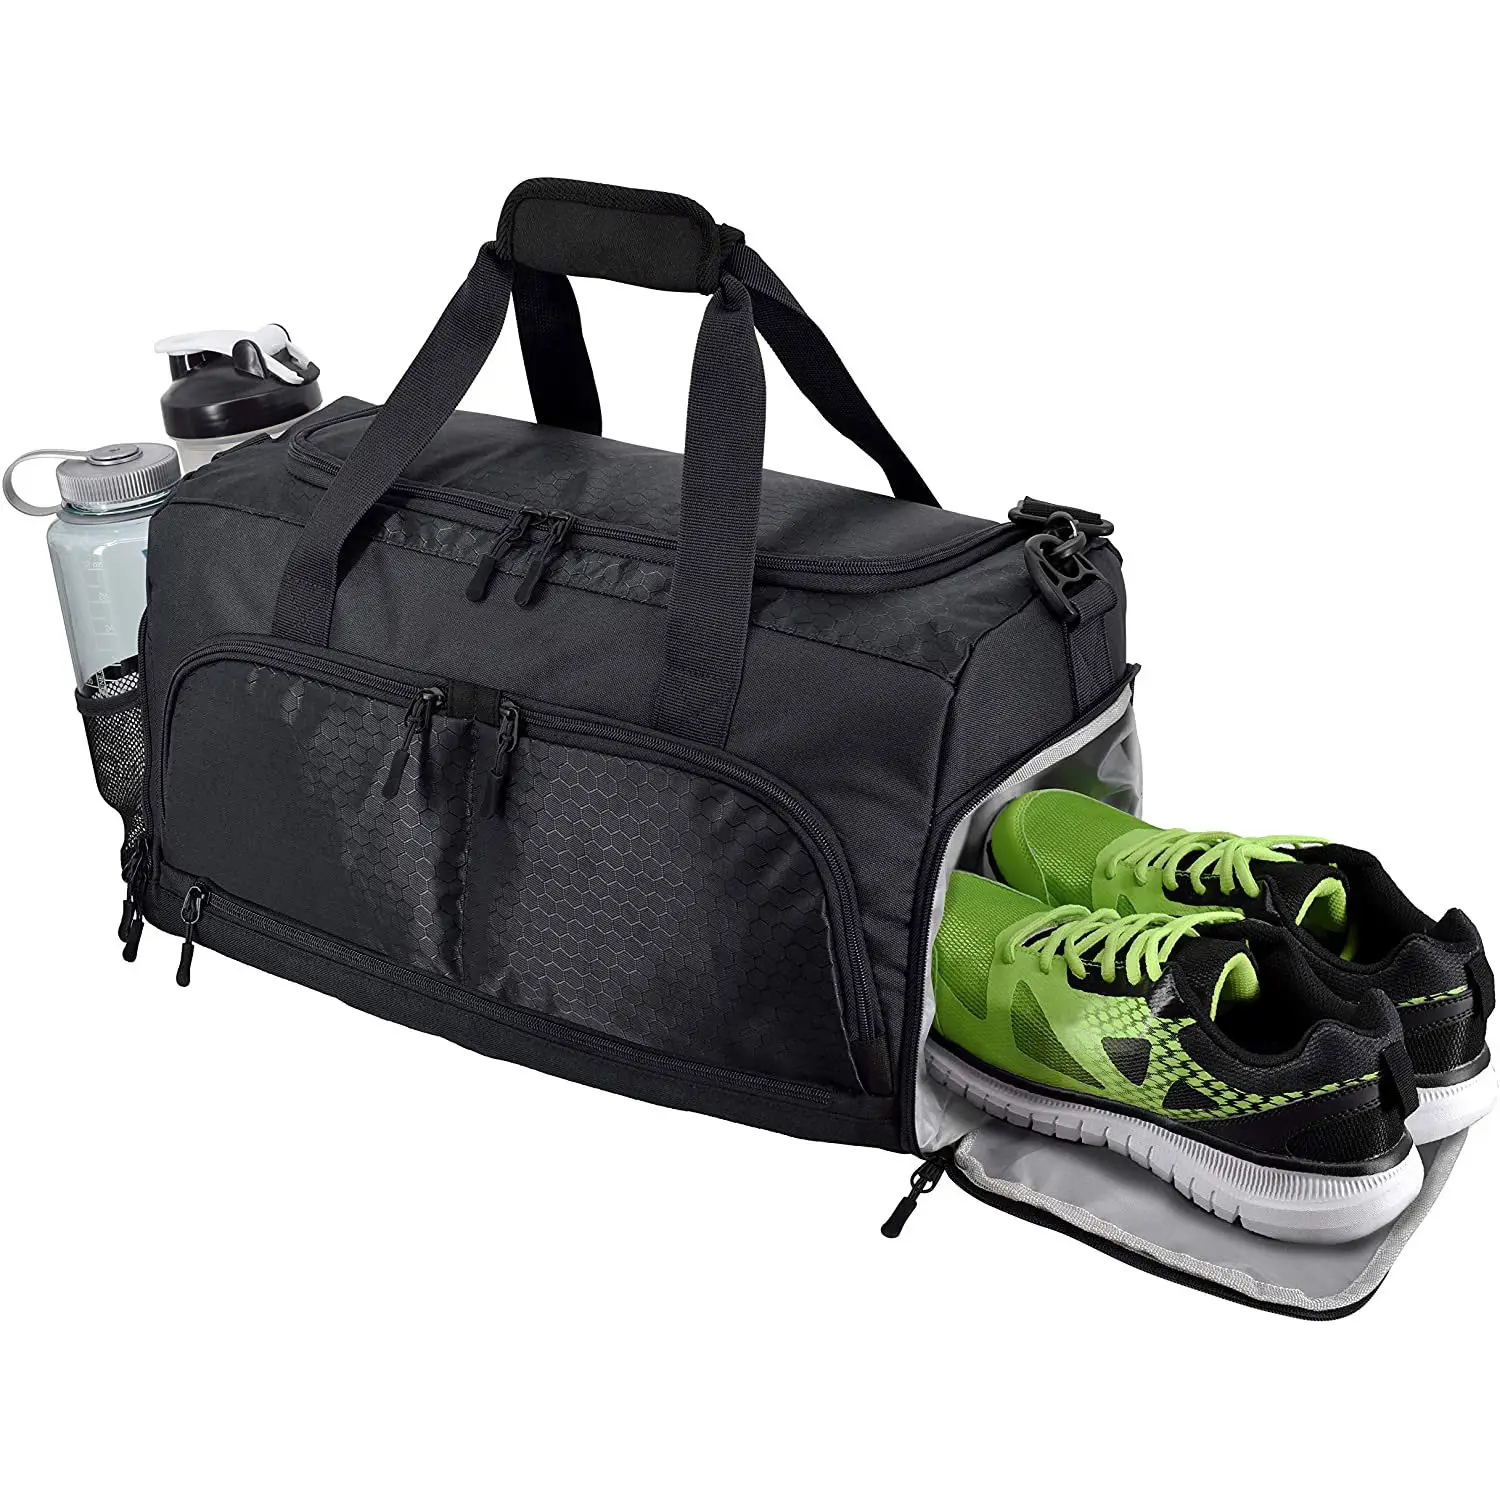 Прочная спортивная сумка Crowdsource <span class=keywords><strong>Ultimate</strong></span>, спортивная сумка с 10 оптимальными отделениями, большая спортивная сумка для спортзала